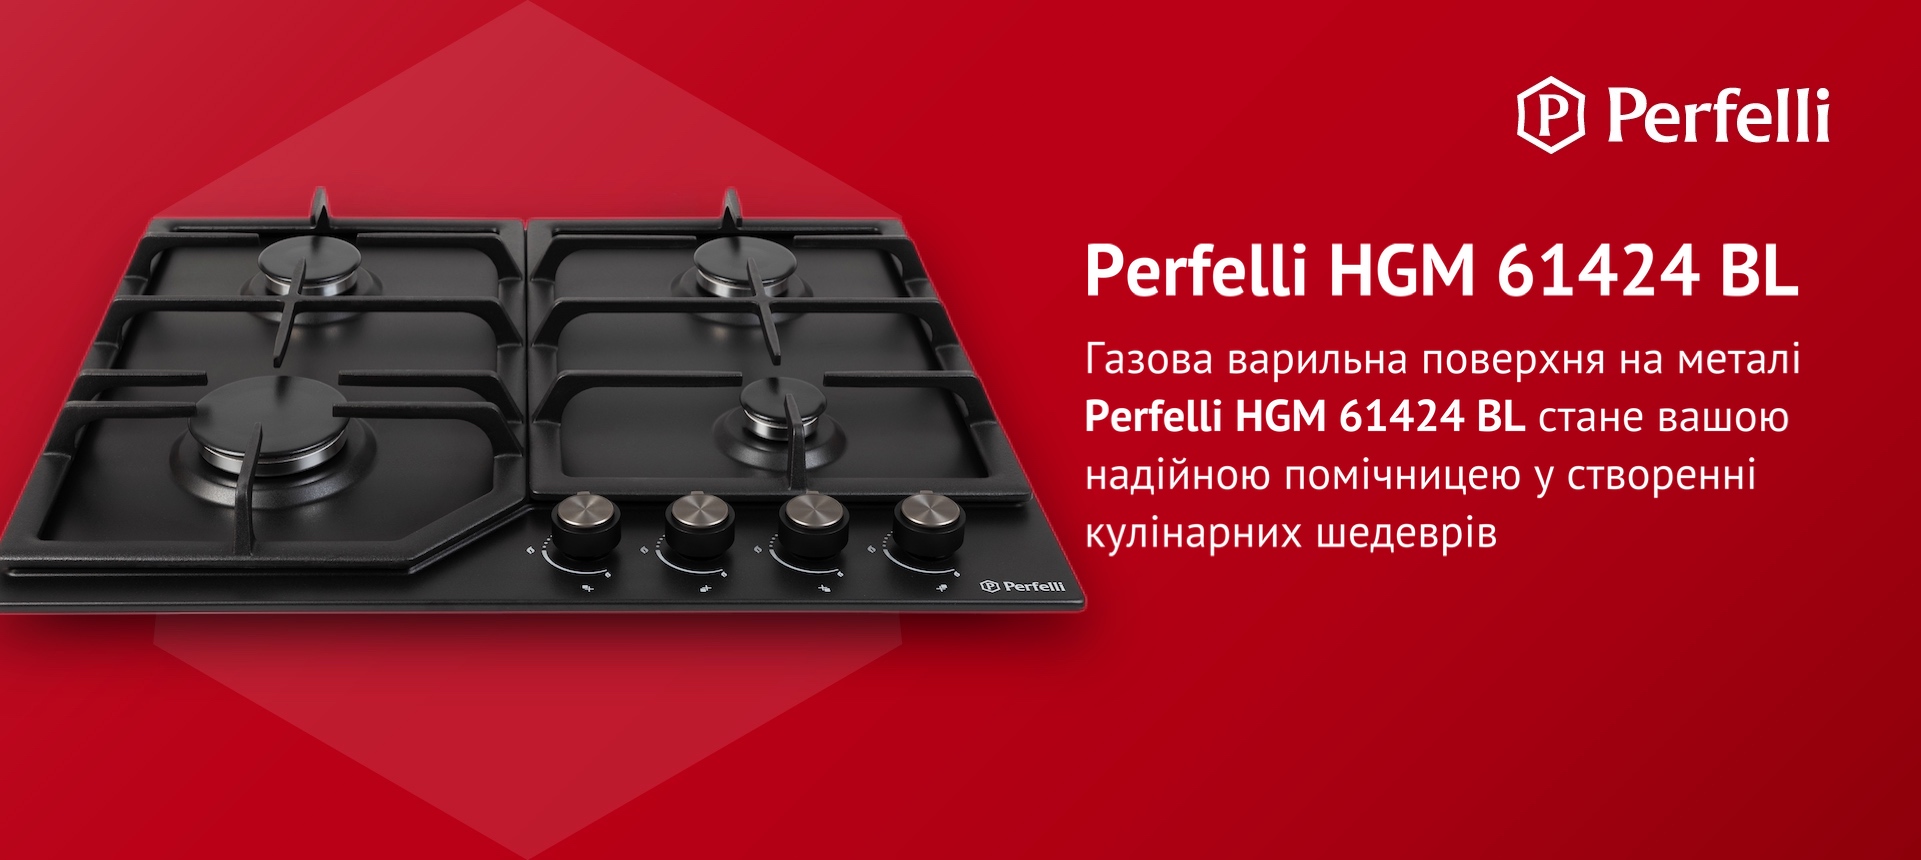 Газова варильна поверхня на металі Perfelli HGM 61424 BL стане вашою надійною помічницею у створенні кулінарних шедеврів